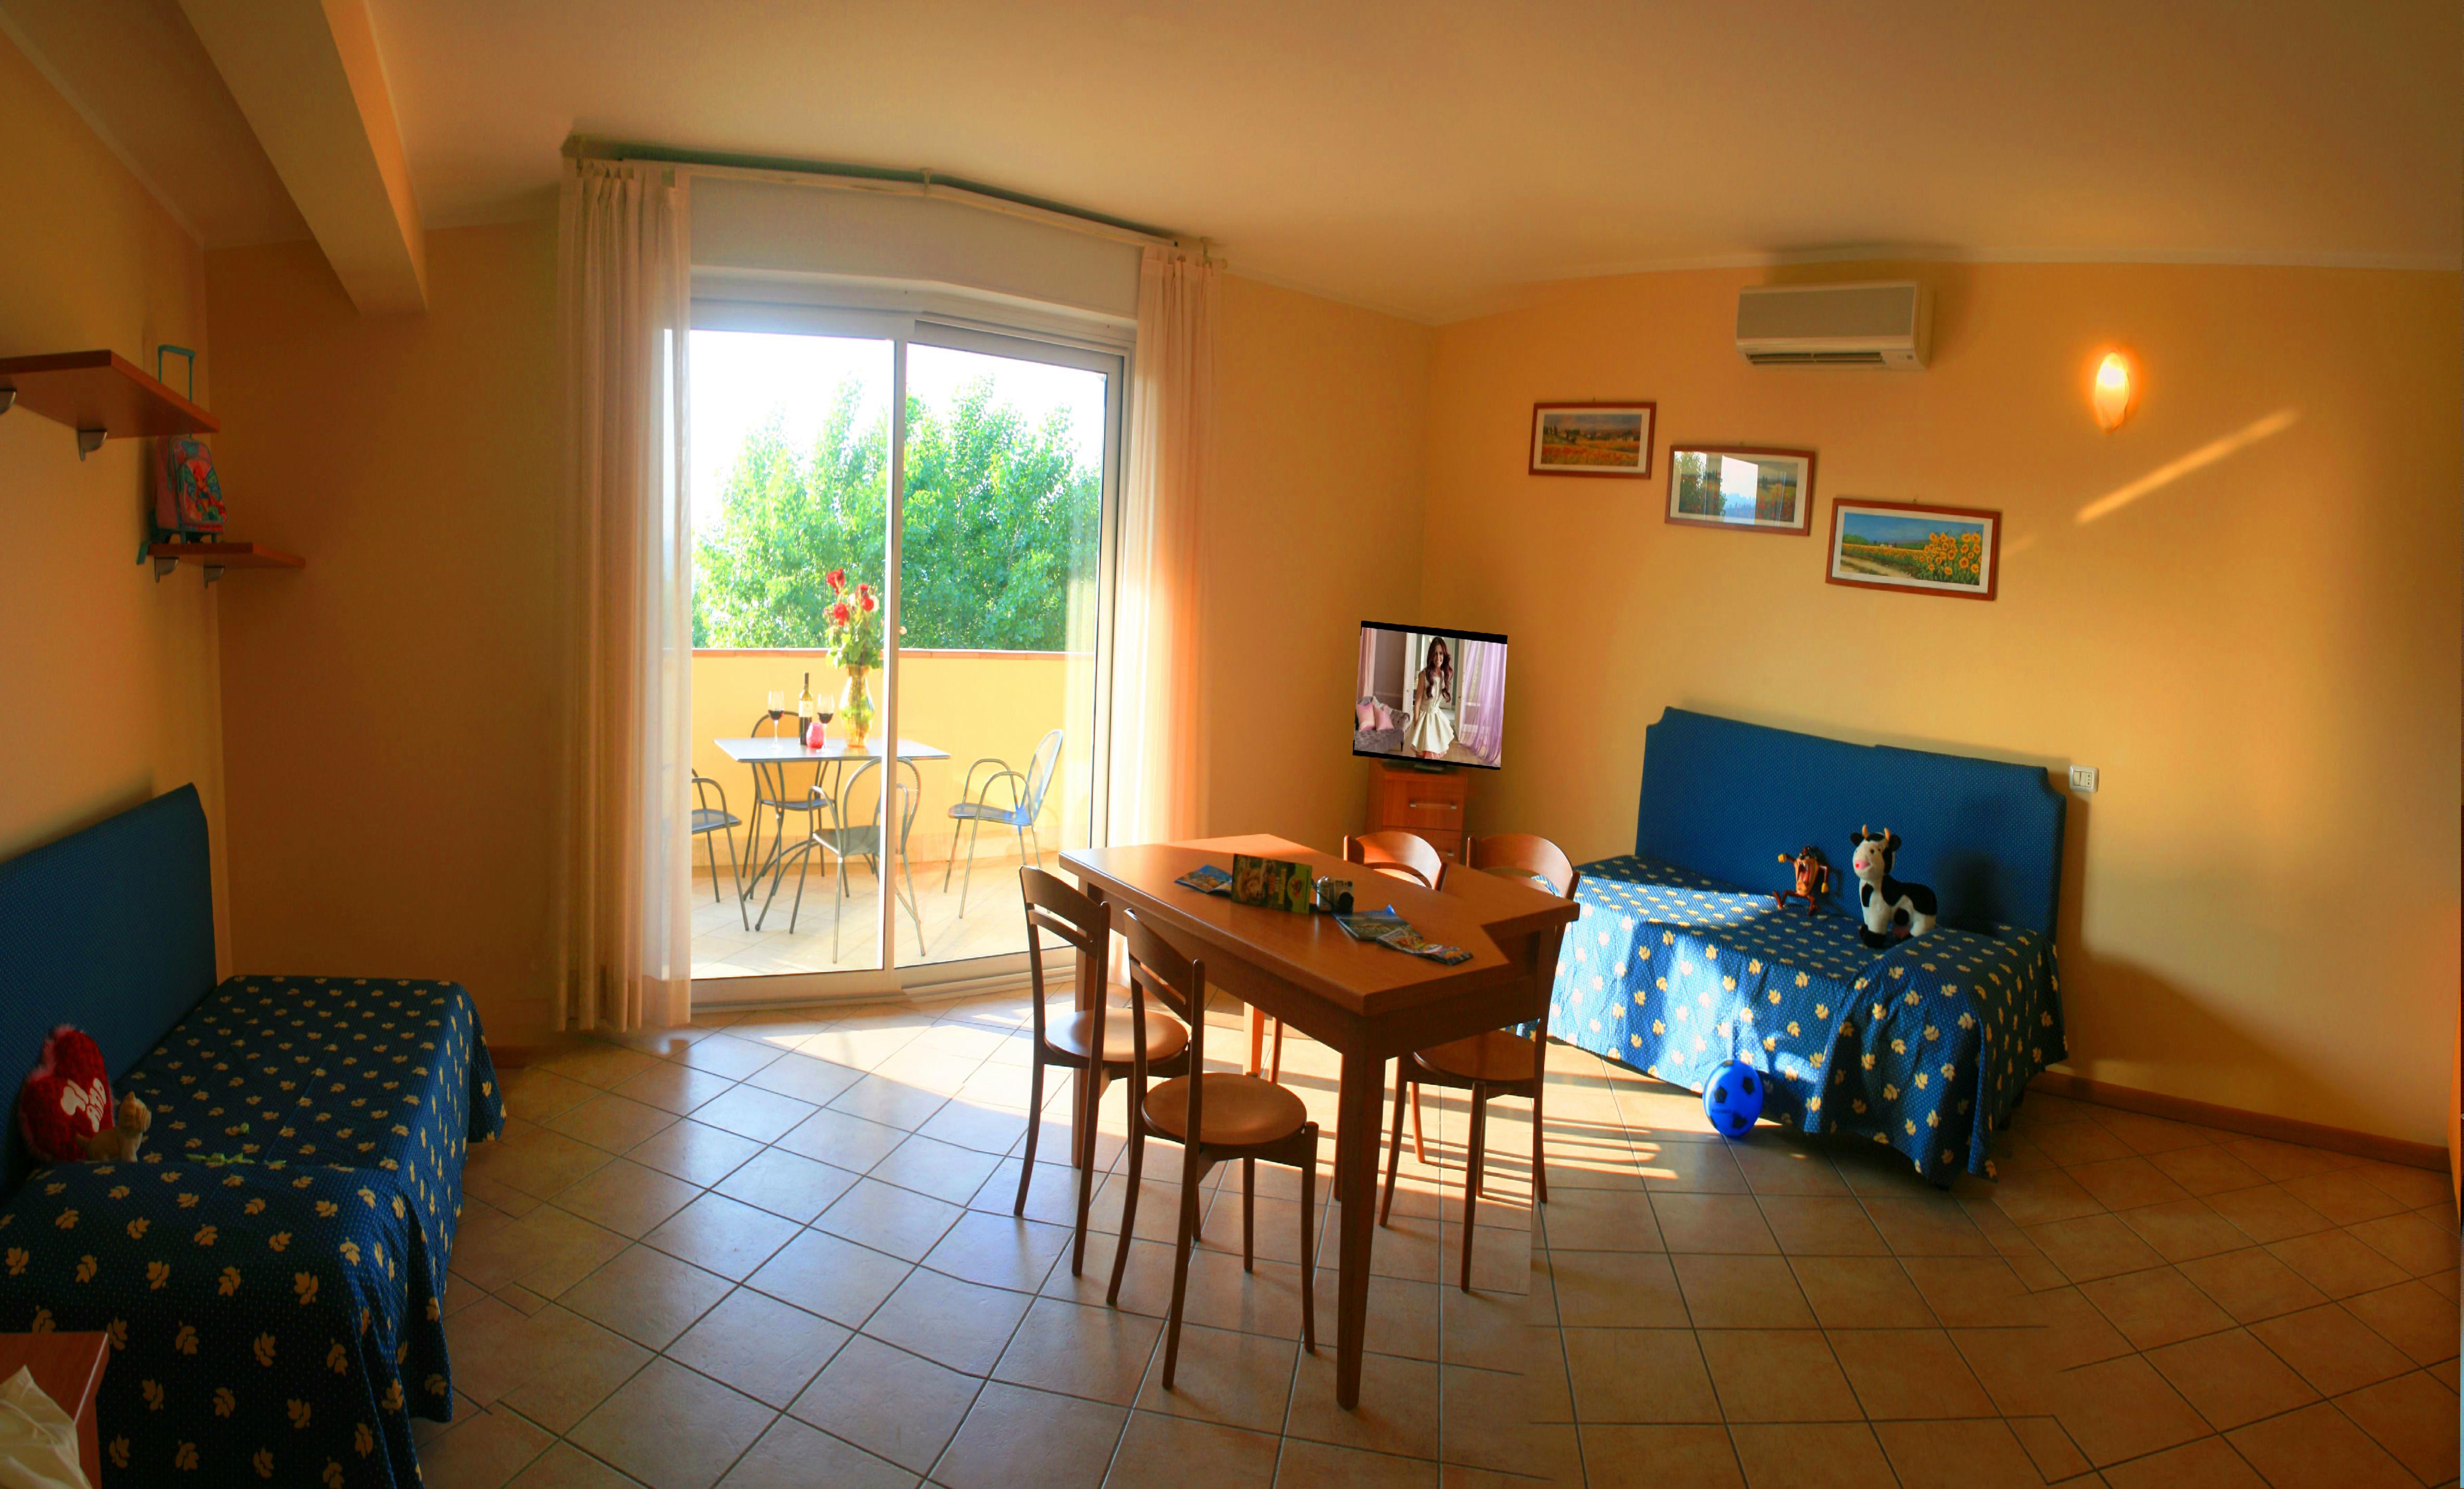 Grote familiekamers in Manerba Een vakantie in de buurt van de Golf van Garda waar u geld kunt besparen zonder in te boeten aan luxe